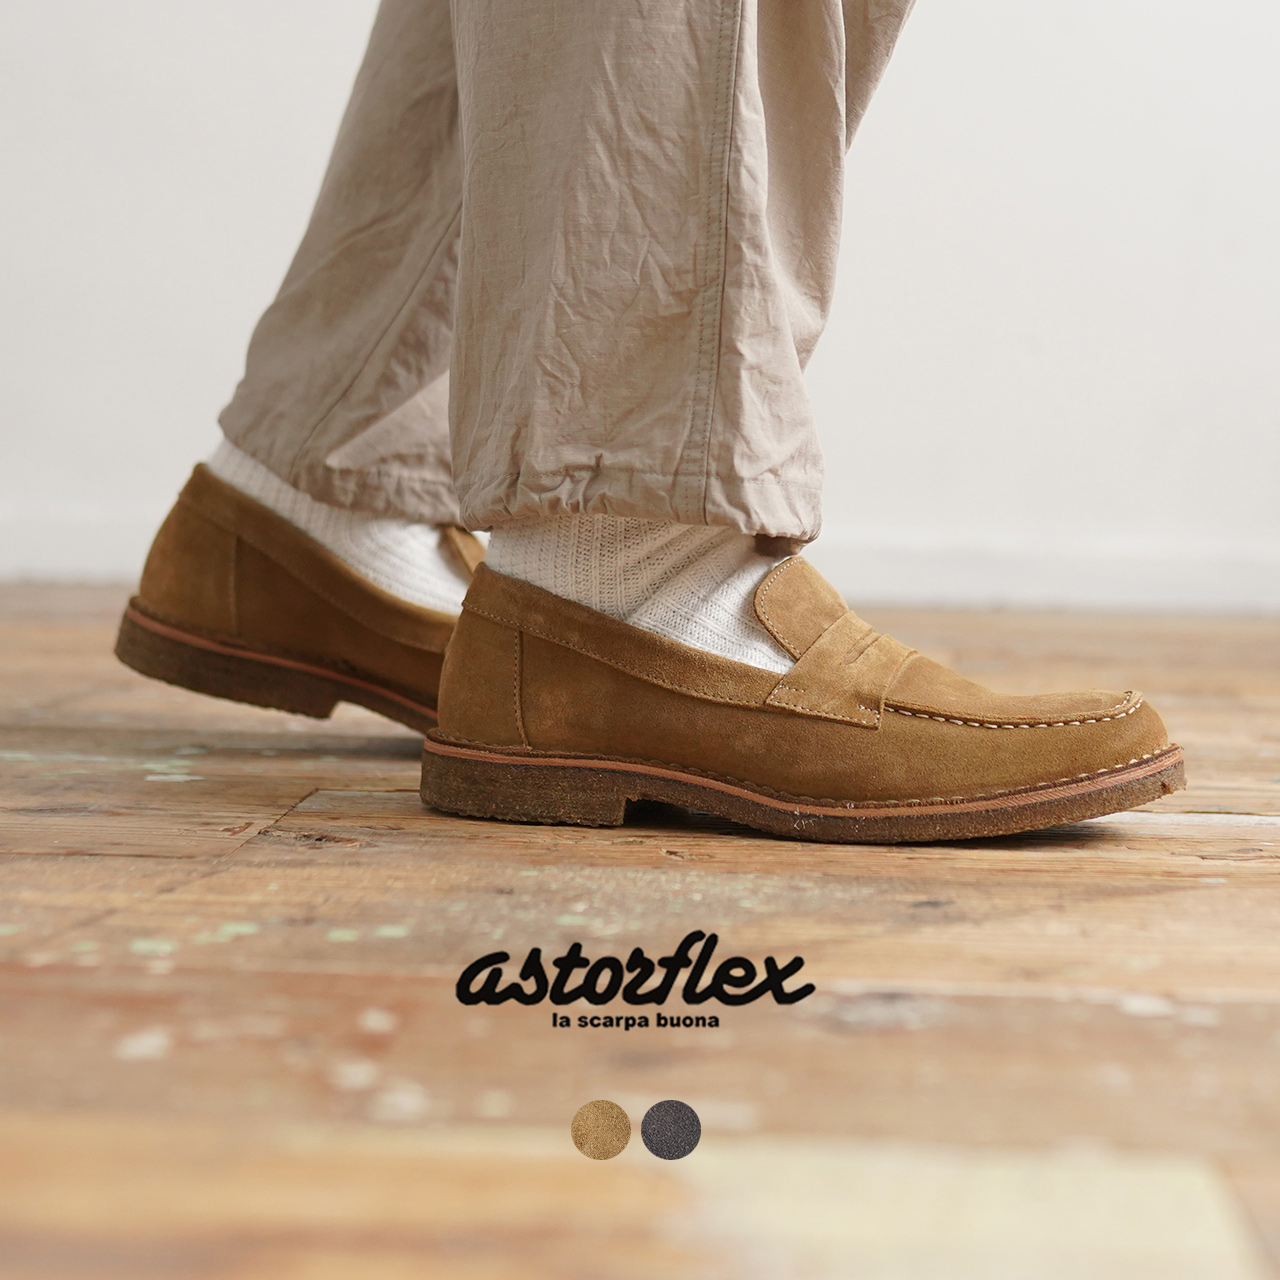 限定商品発売中 Astorflex サイドゴアブーツ アスターフレックス ブーツ